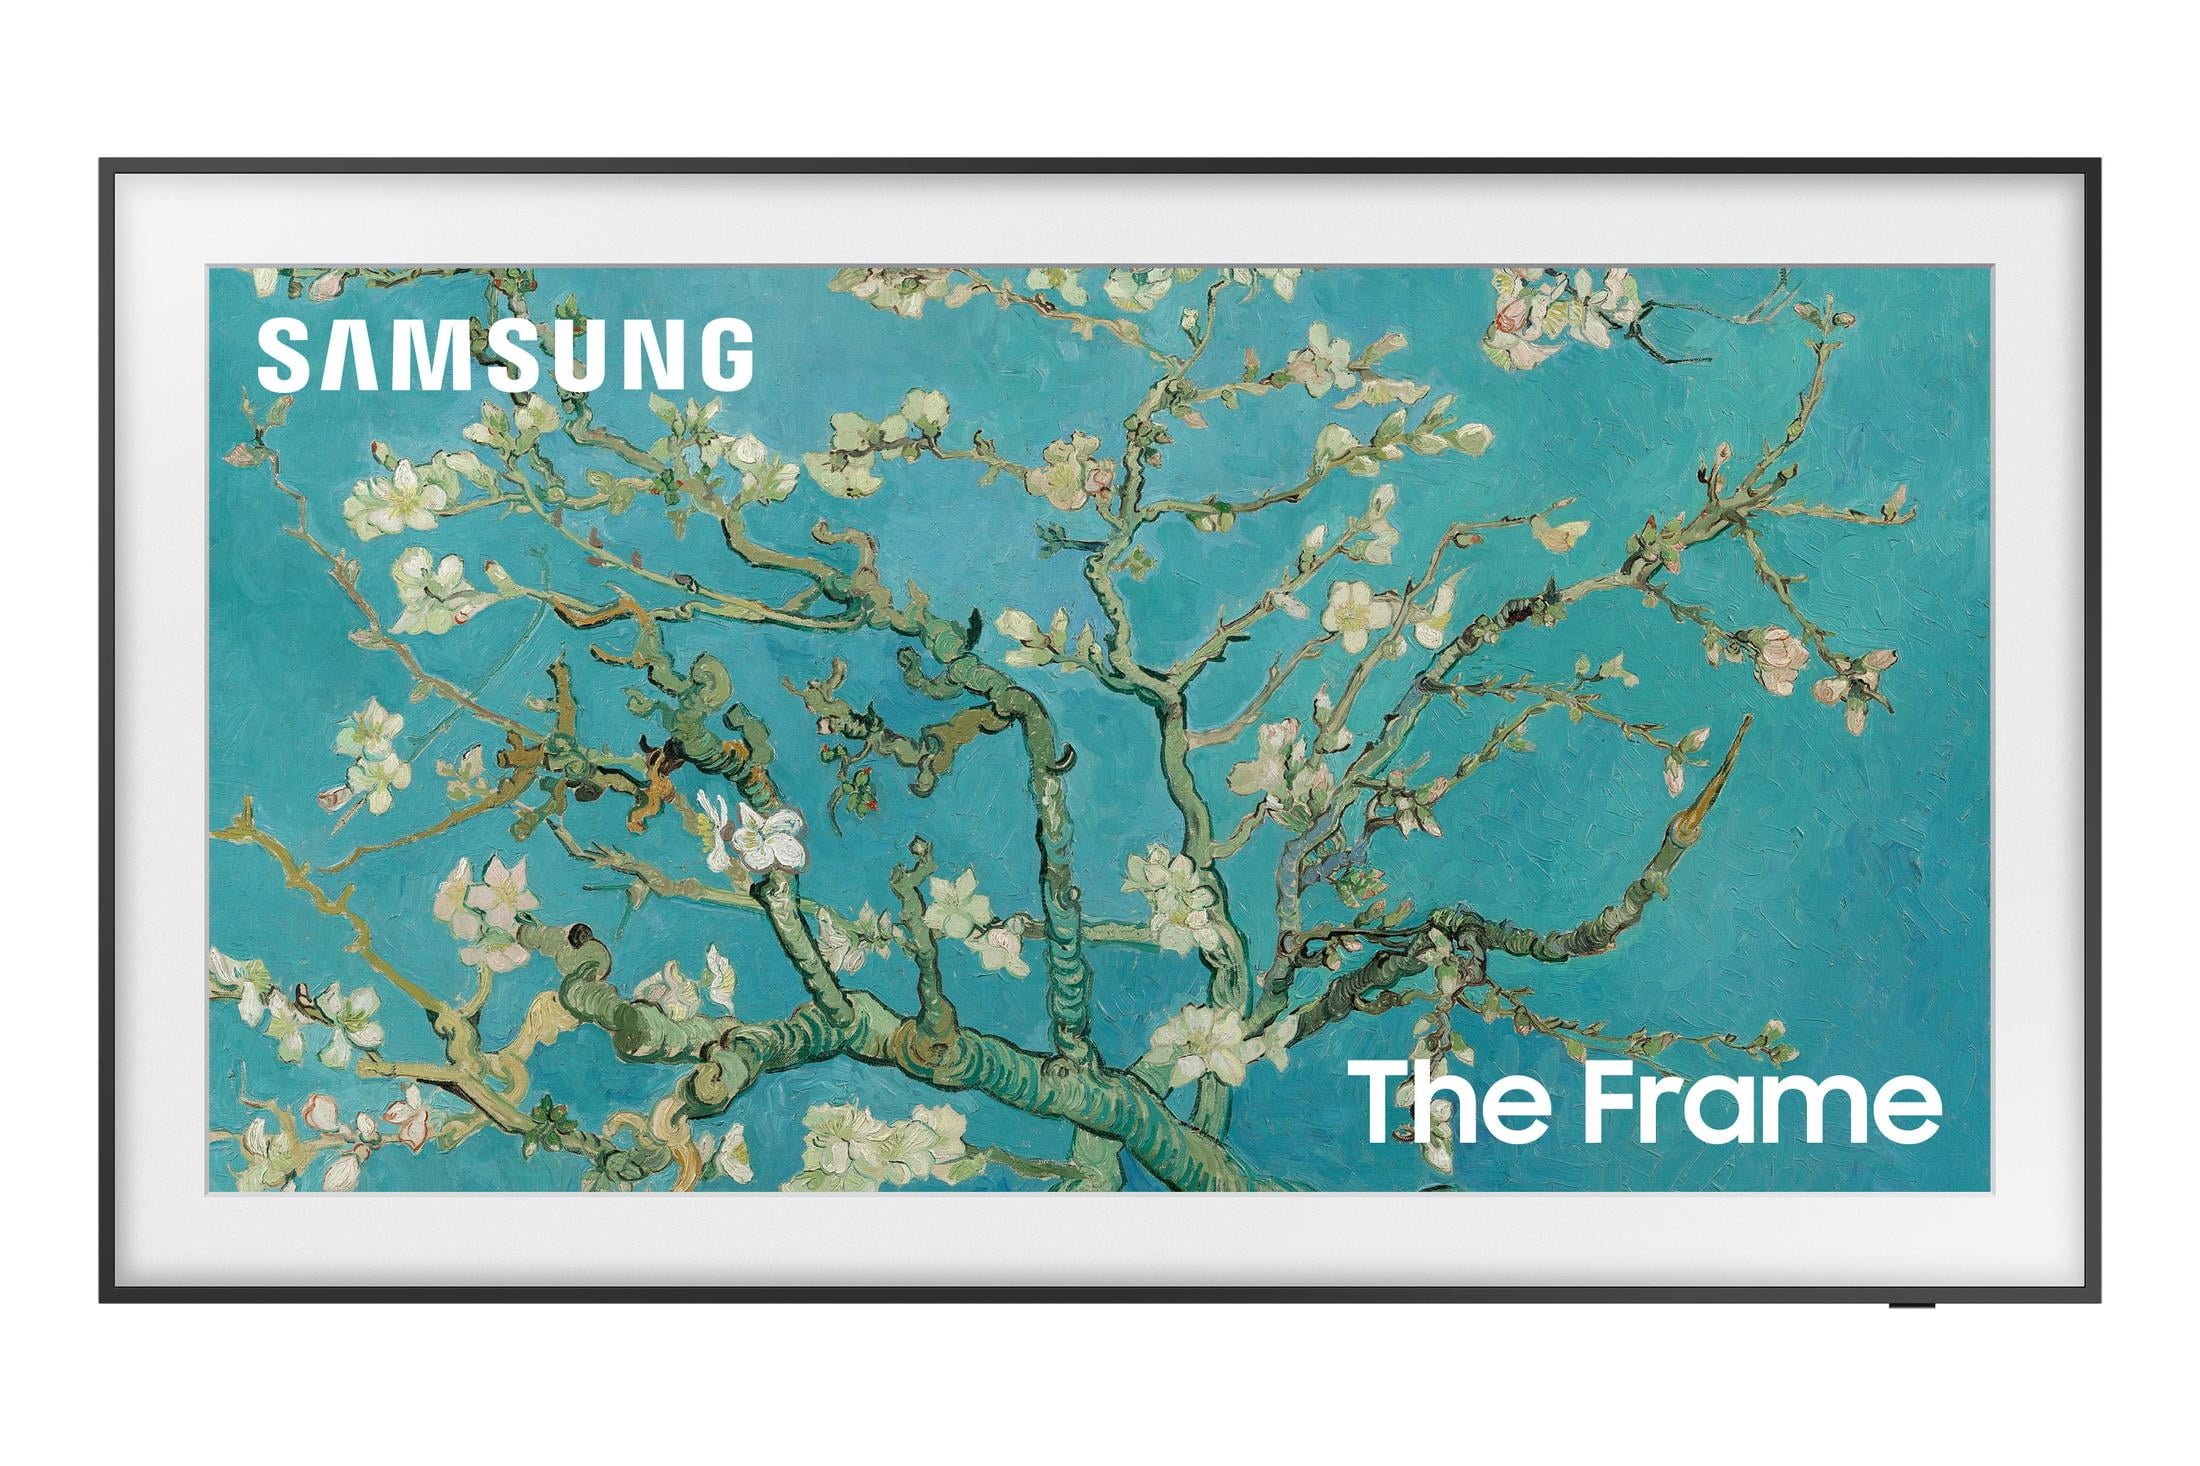 Samsung Inch The Frame TV Disney 100 Edition LS03B, Samsung Canada